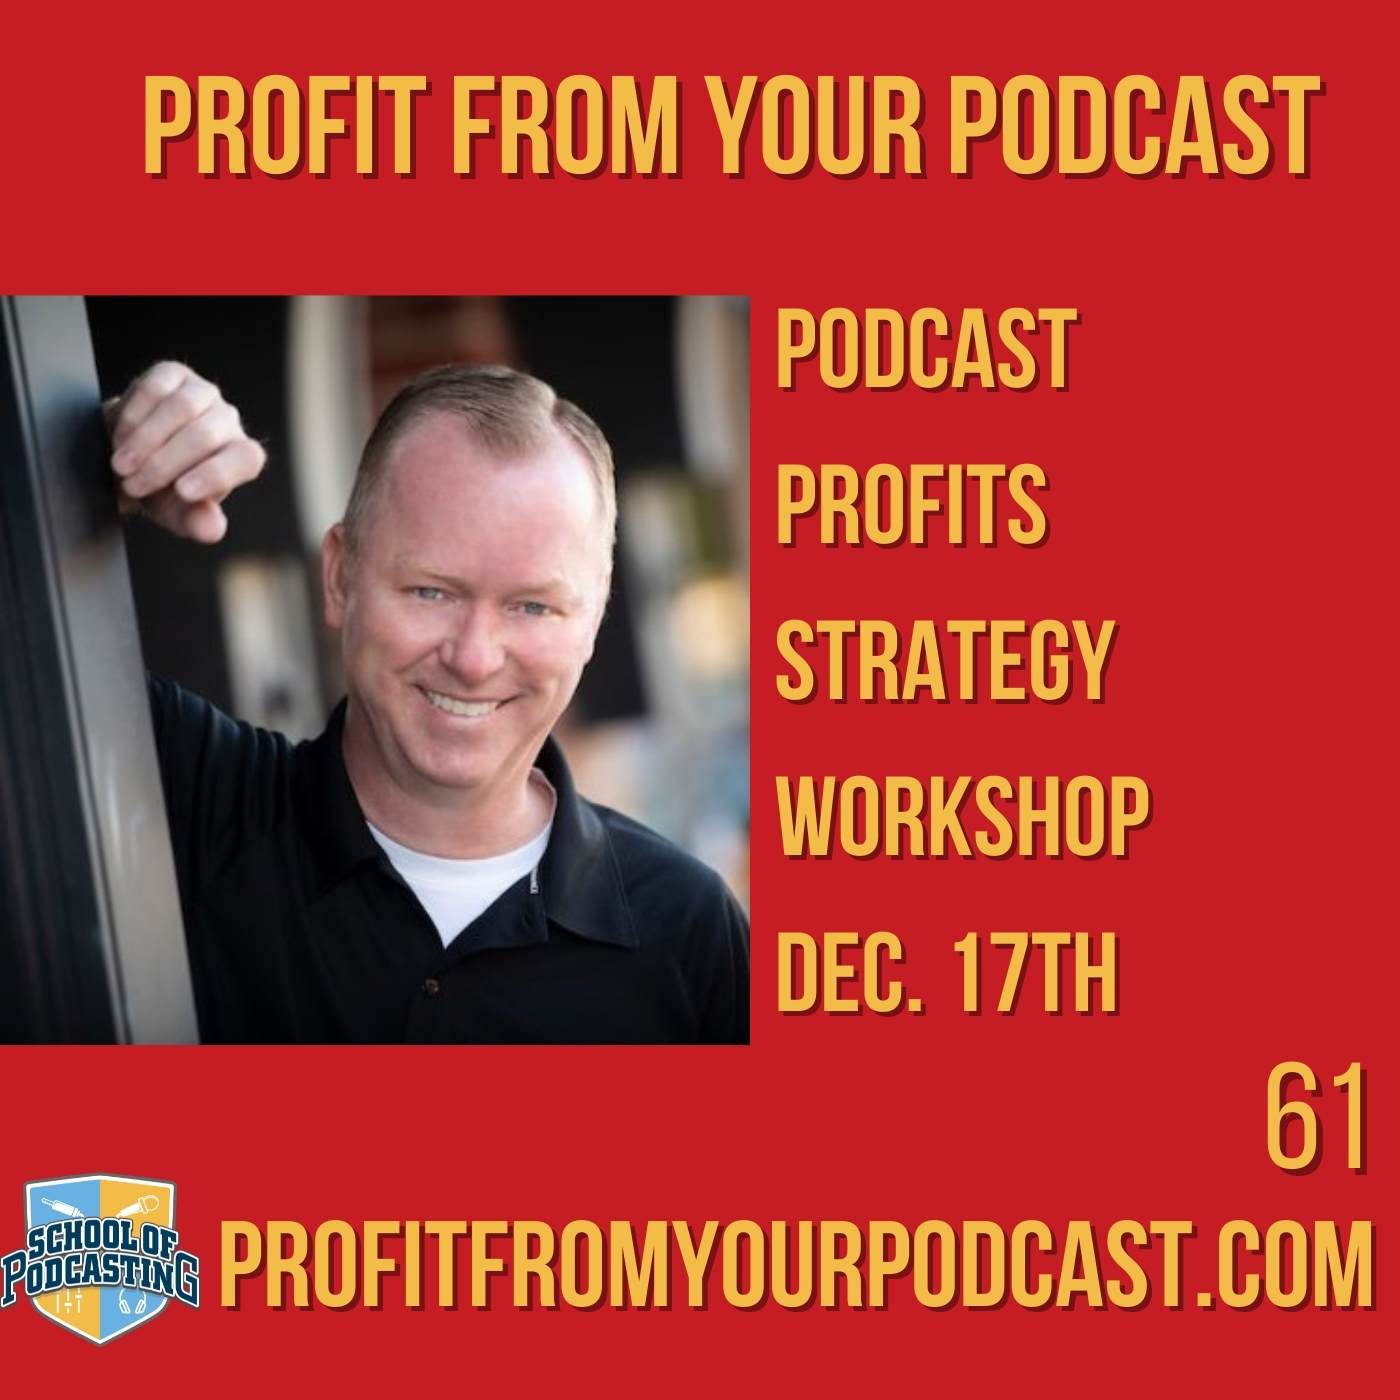 Podcast Profits Strategy Workshop With Erik K Johnson Image